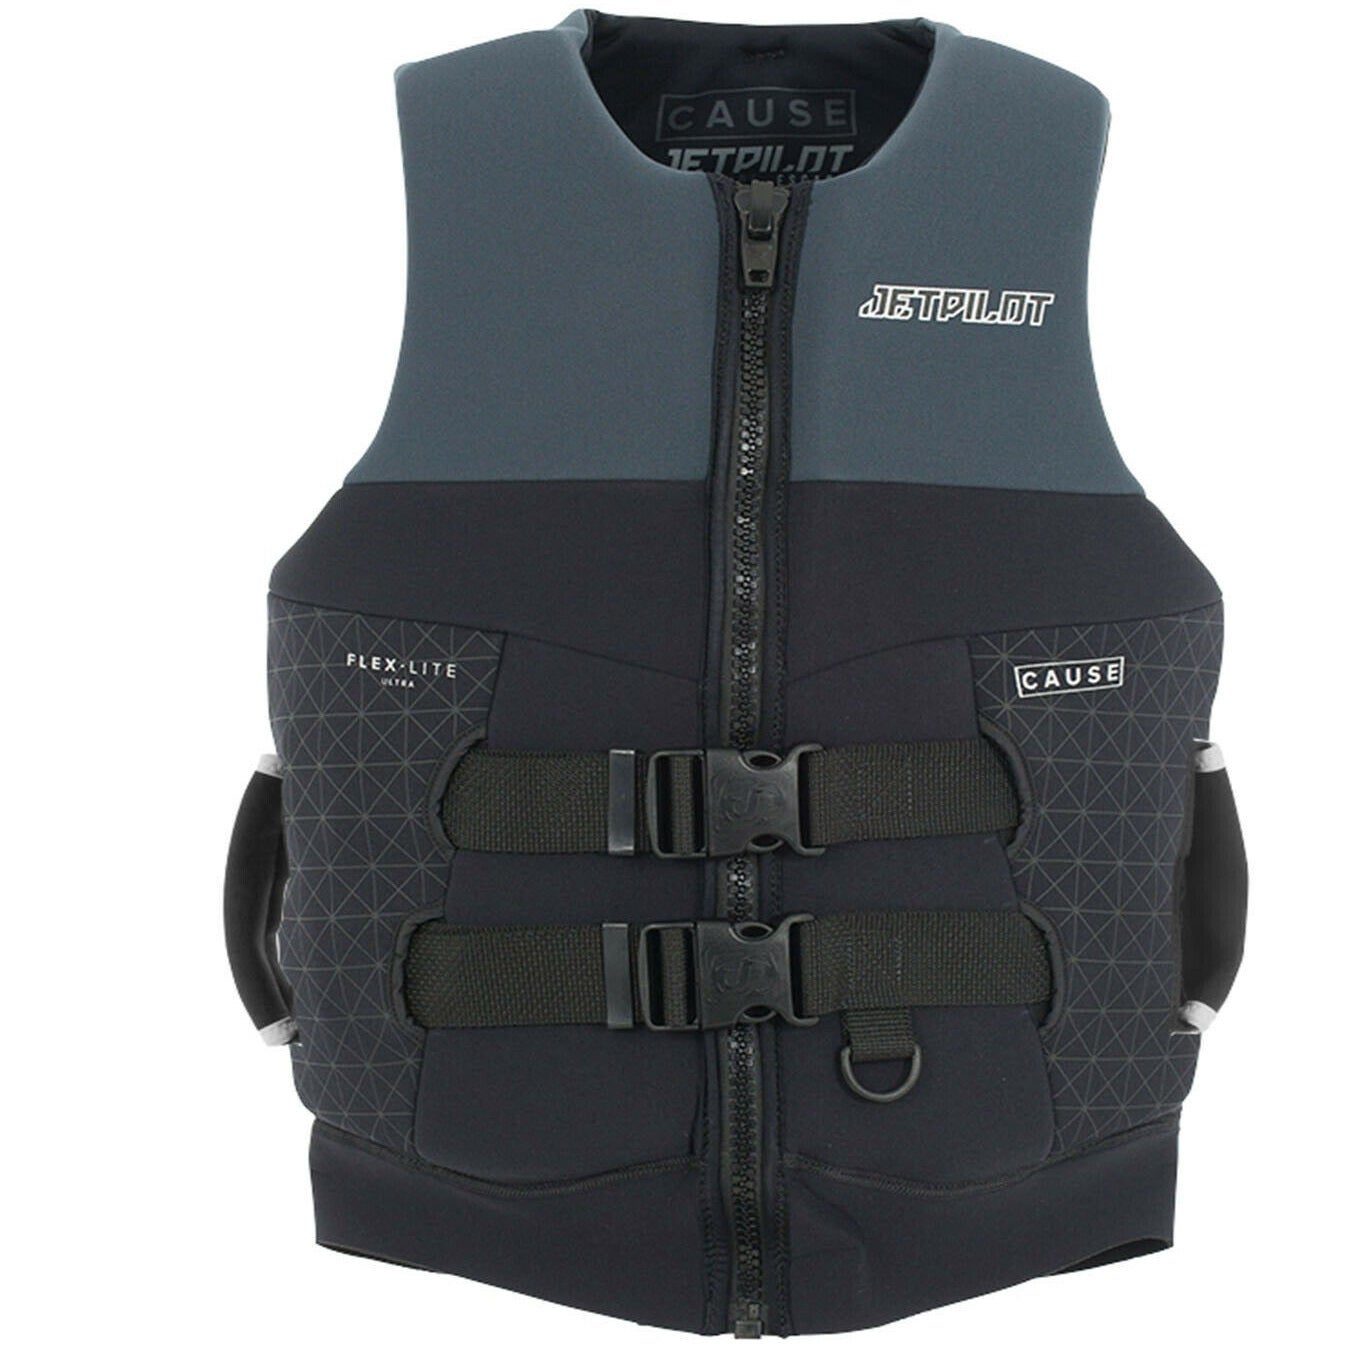 Jetpilot Cause Suregrip Men's L50s FE Neo Vest JA19217 - Black Charcoal Size S-XL